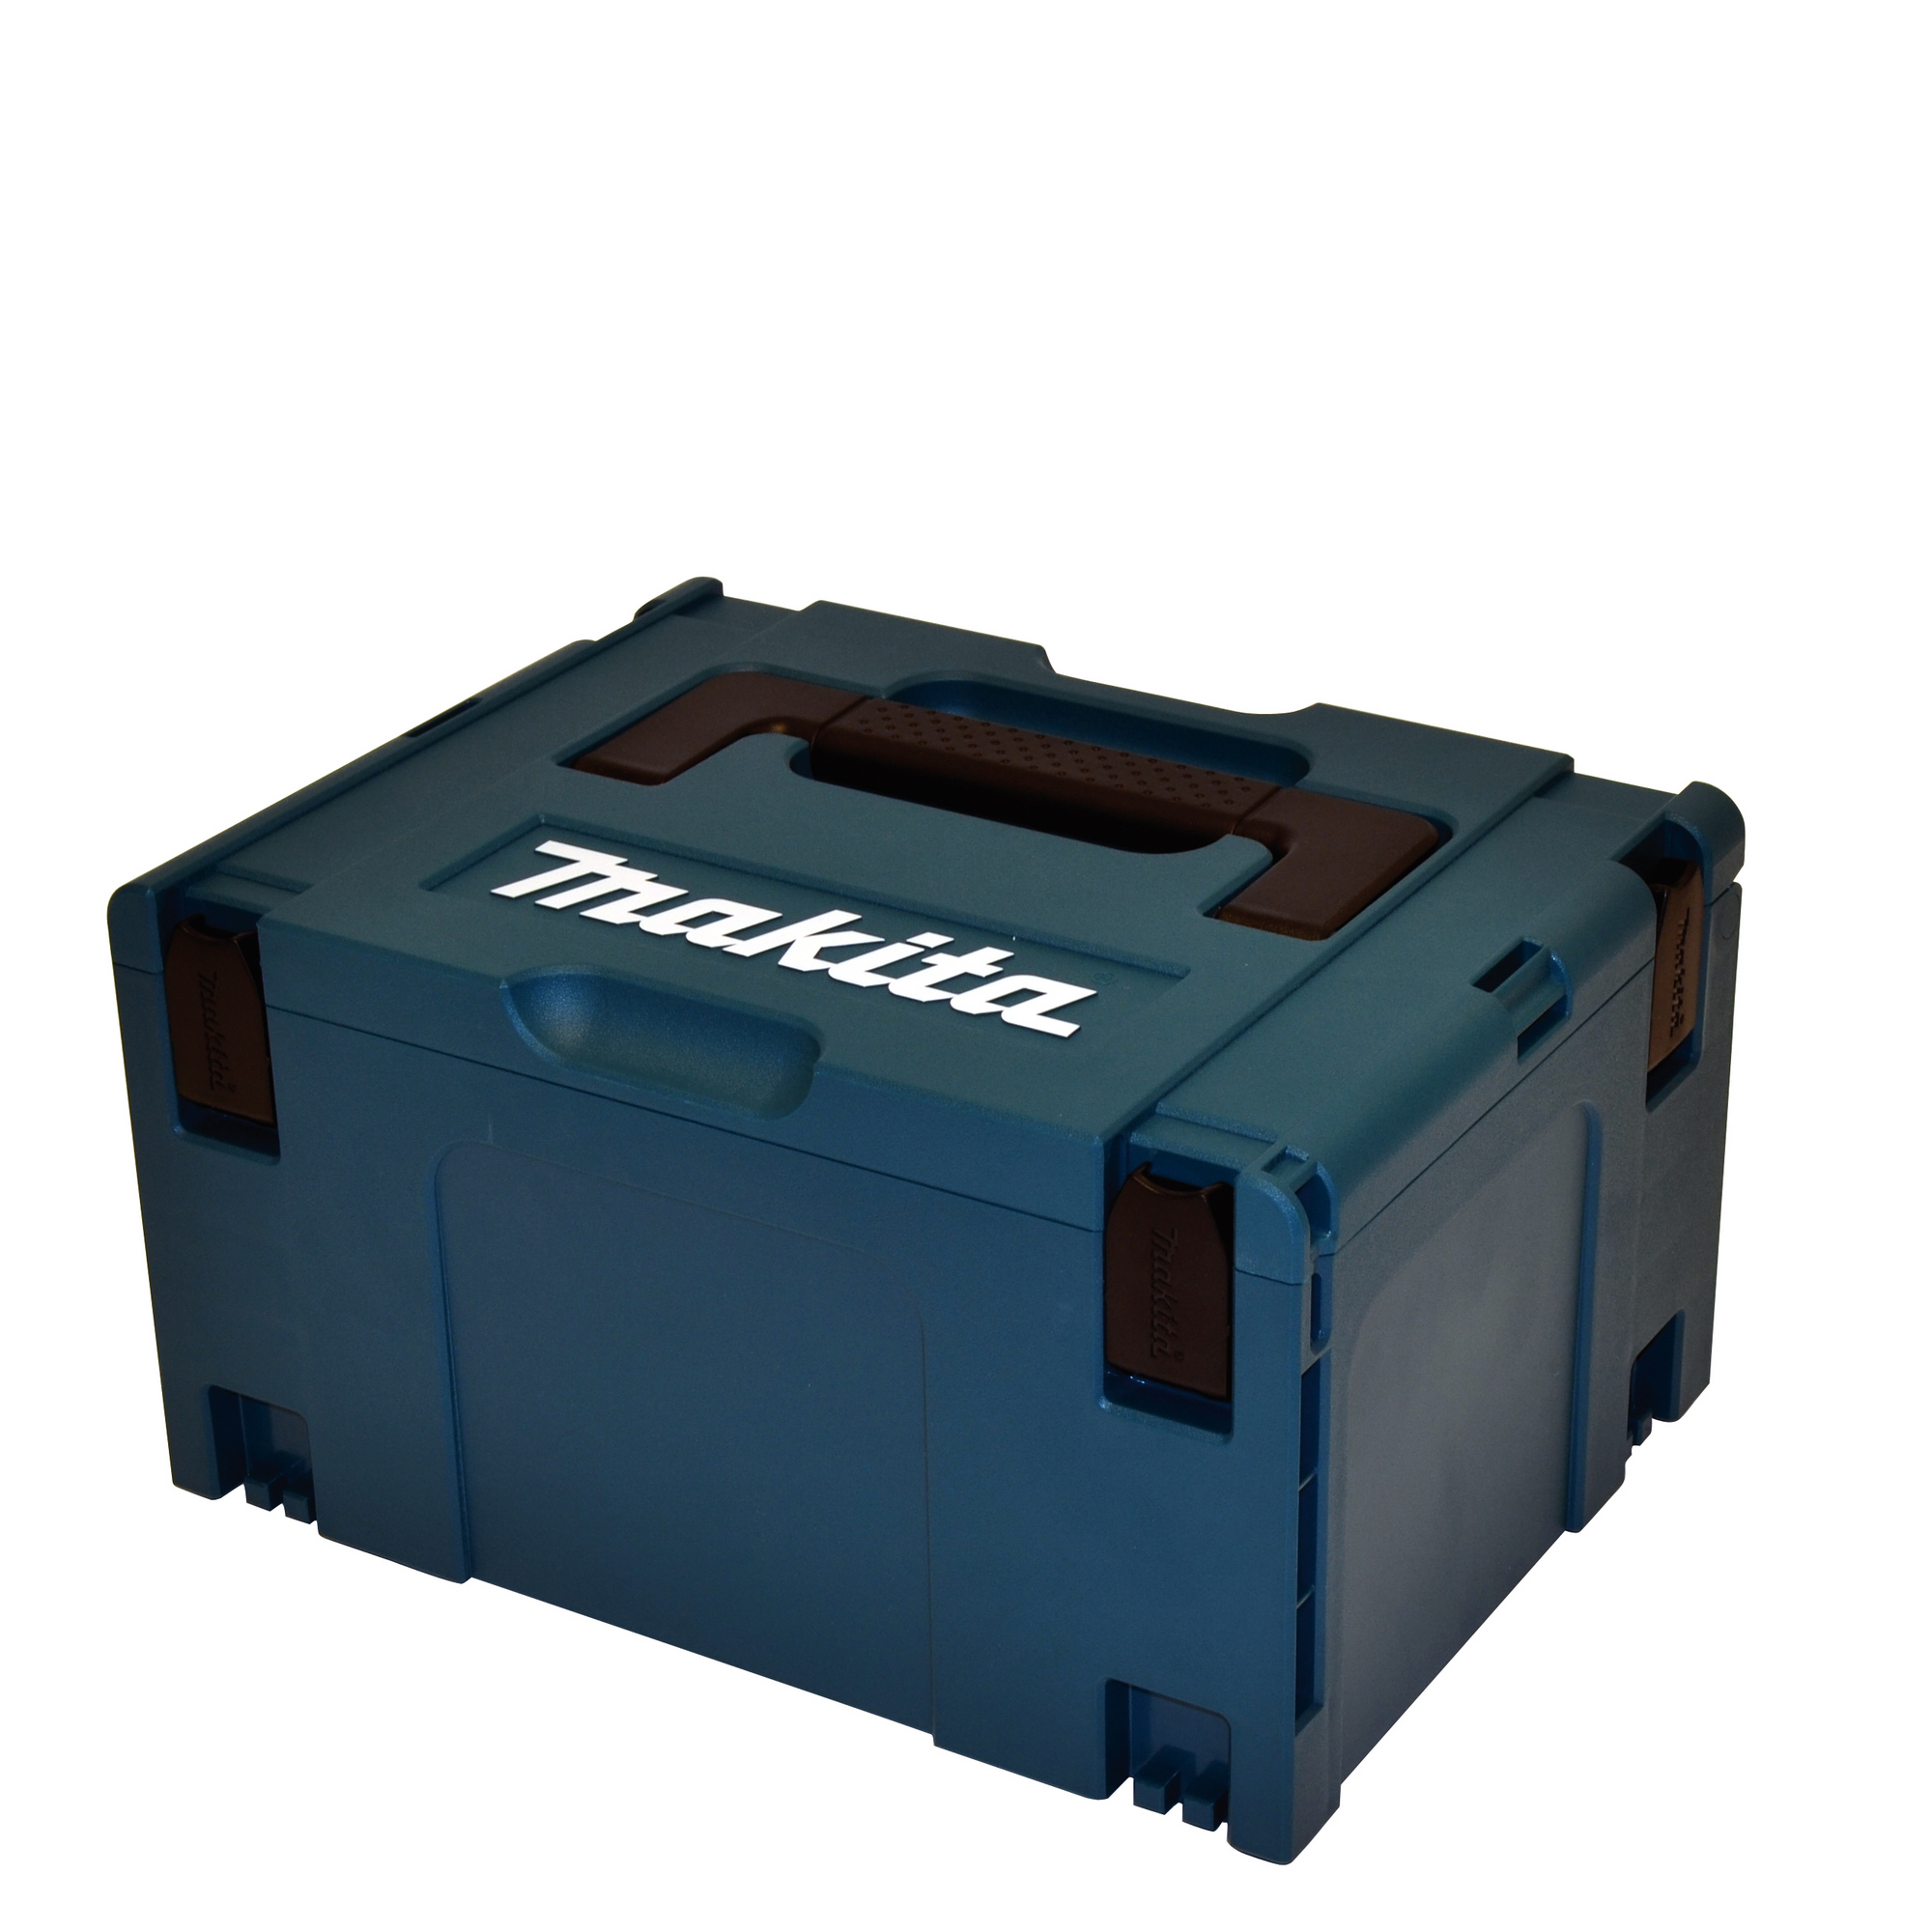 Makpac-Transportkoffer mit Schaumstoffeinlage, Größe 3, 39,5 x 29,5 x 21,5 cm + product picture